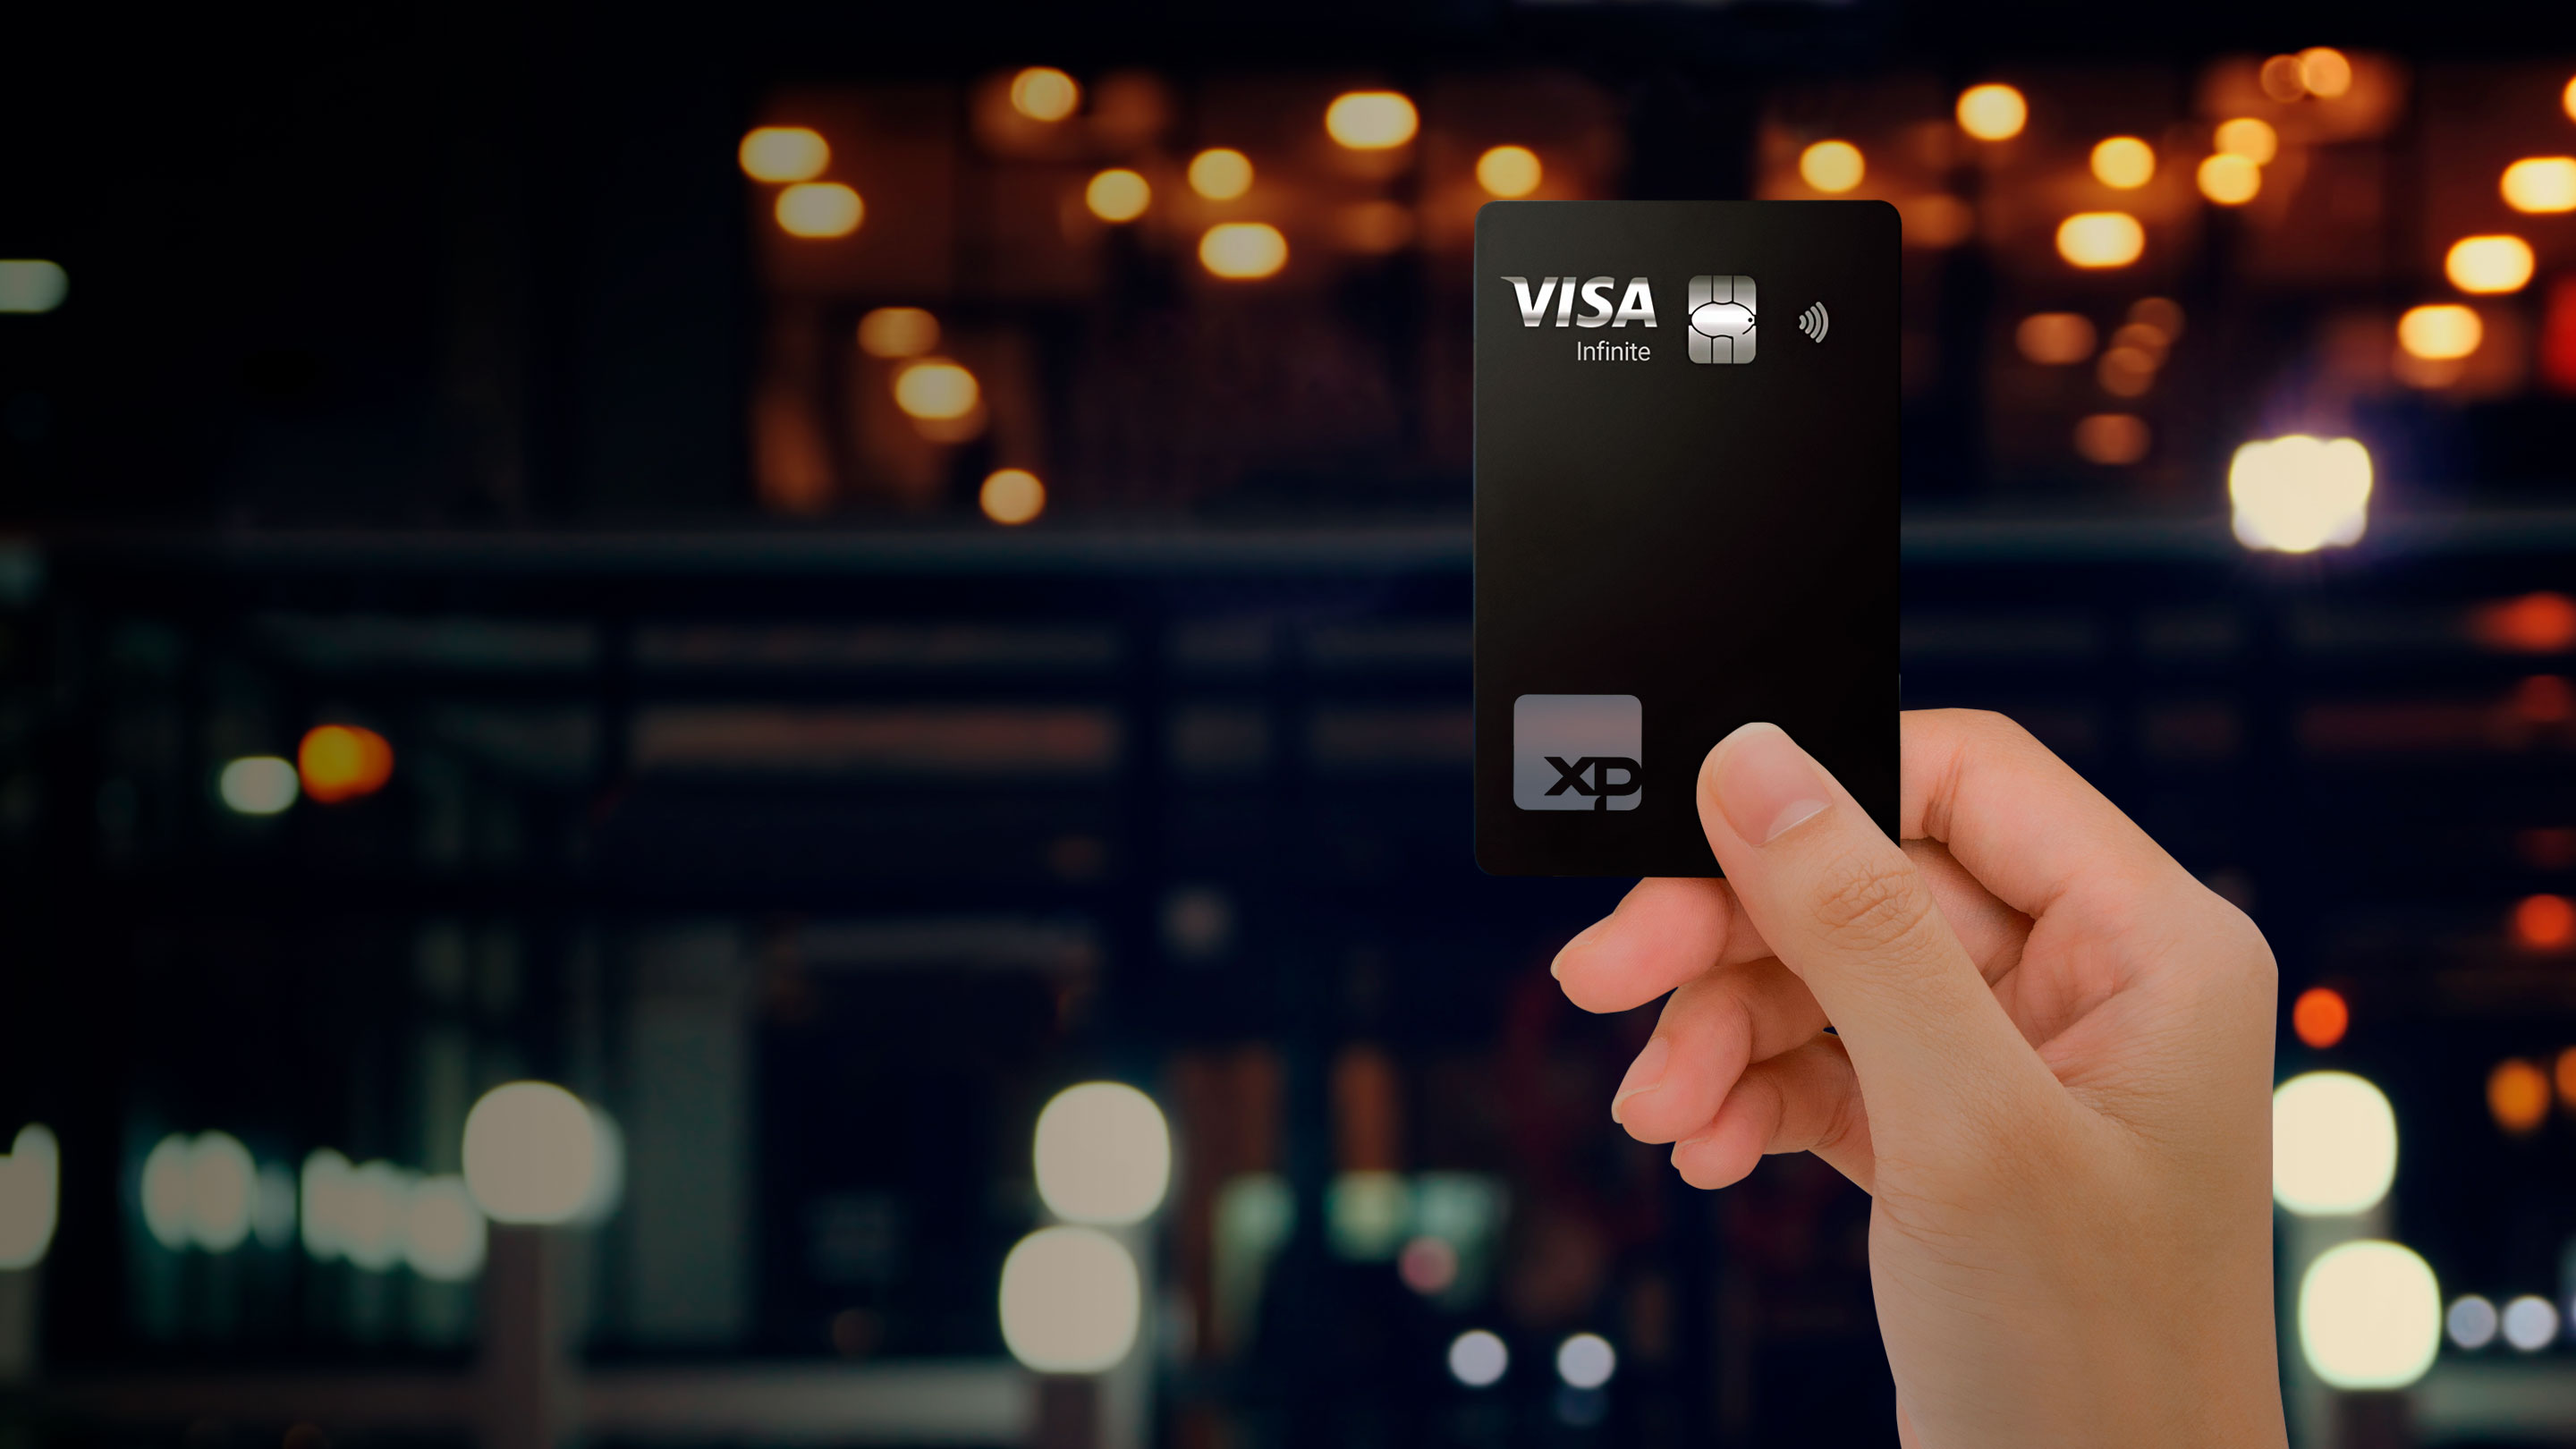 Cartão XP Visa Infinite: você pode comprar e receber dinheiro de volta para investir